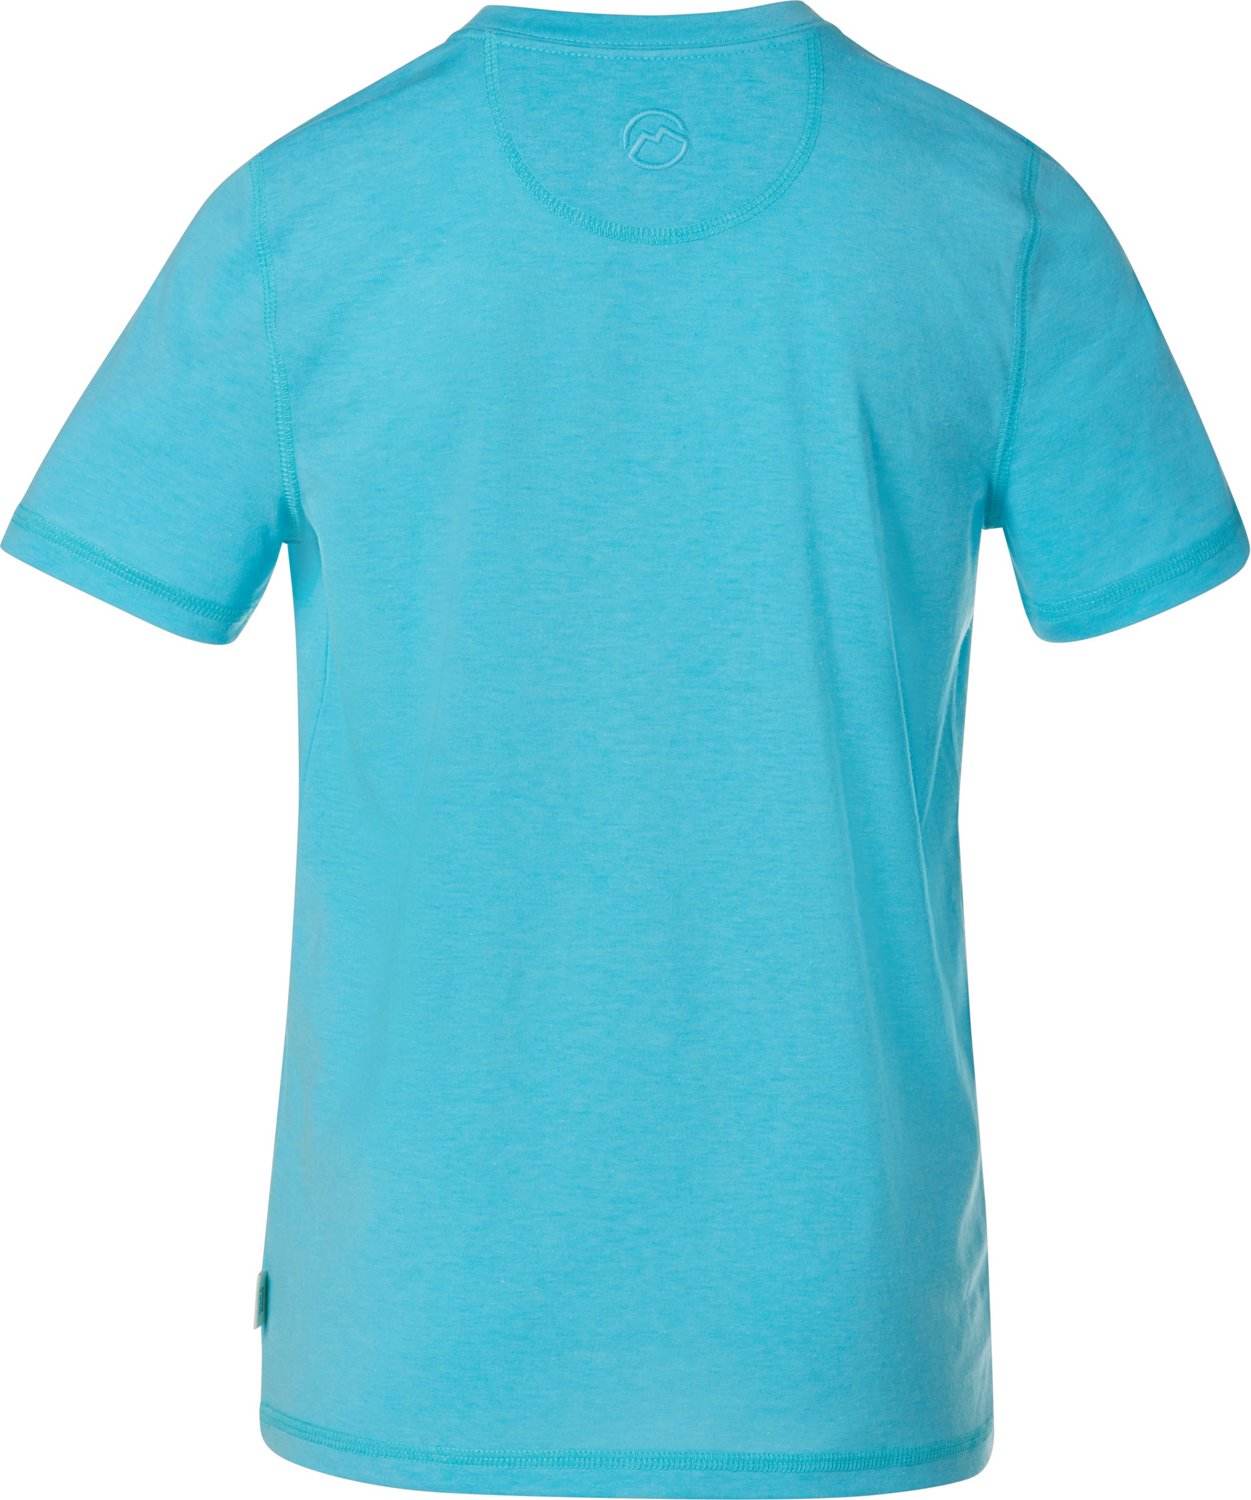 Magellan Outdoors Boys' Catch & Release Short Sleeve T-shirt